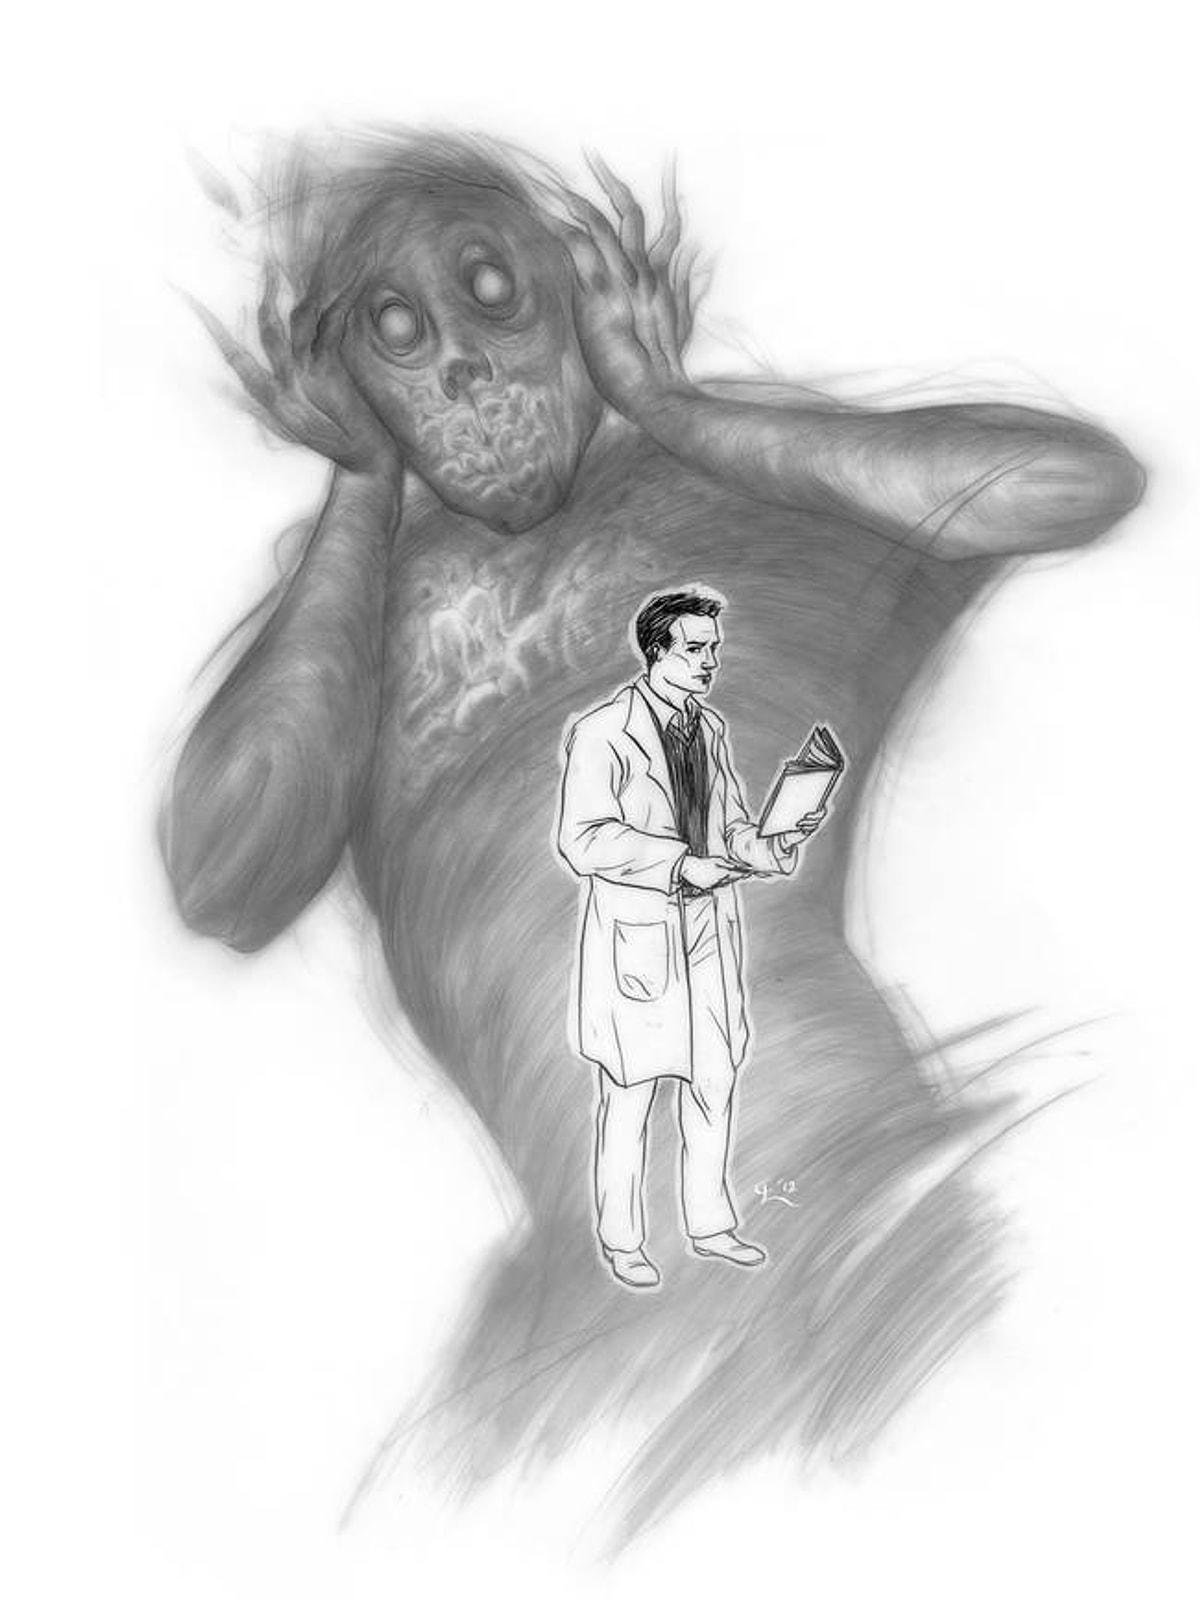 На рисунке изображен человек страдающий заболеванием